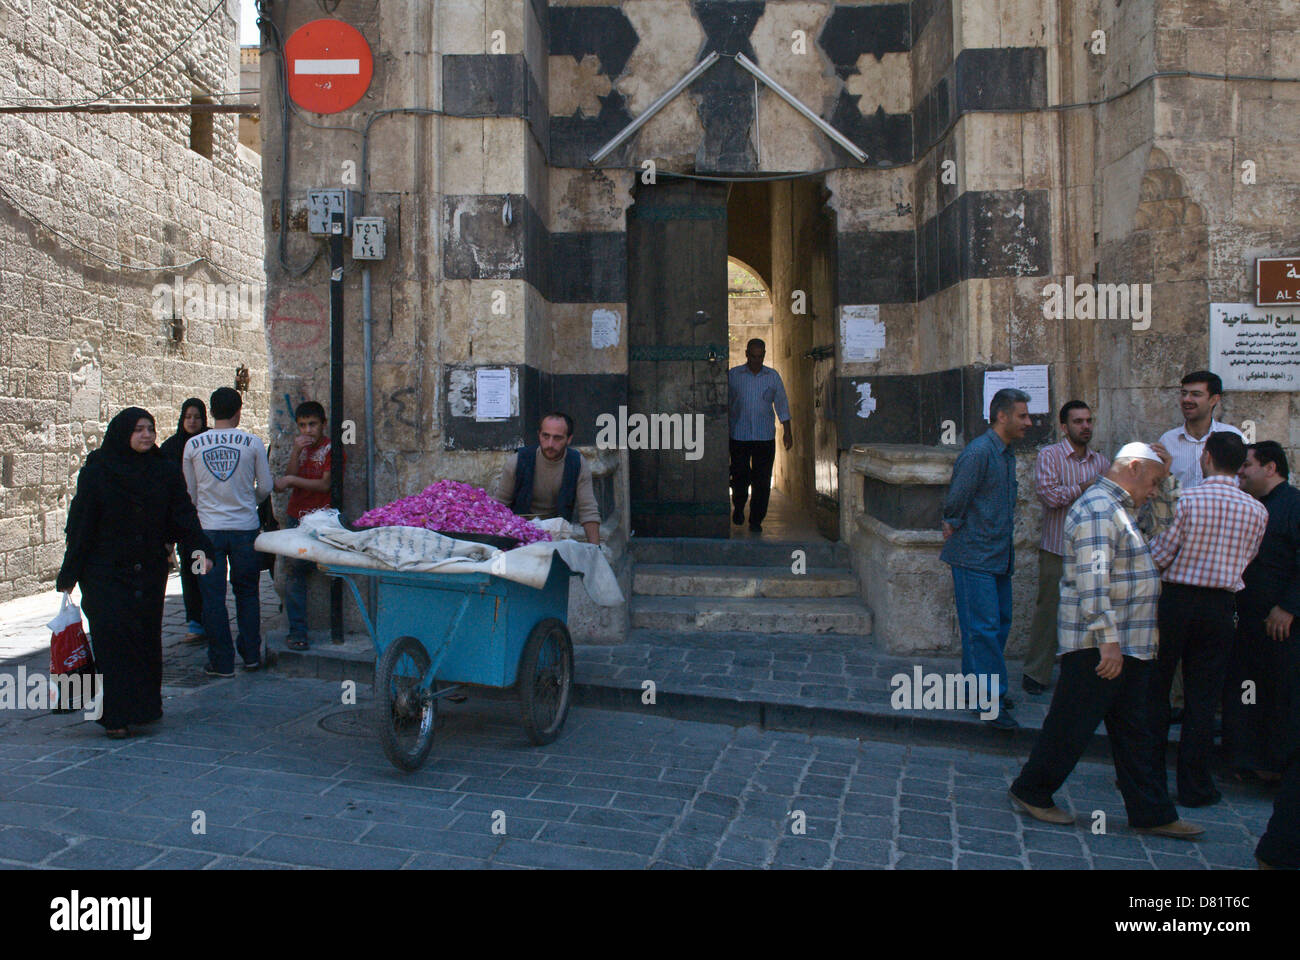 Aleppo, Siria. Le persone al di fuori dell'ingresso di una vecchia moschea nel centro della città vecchia, con un uomo vendita di petali di rosa da un carrello Foto Stock